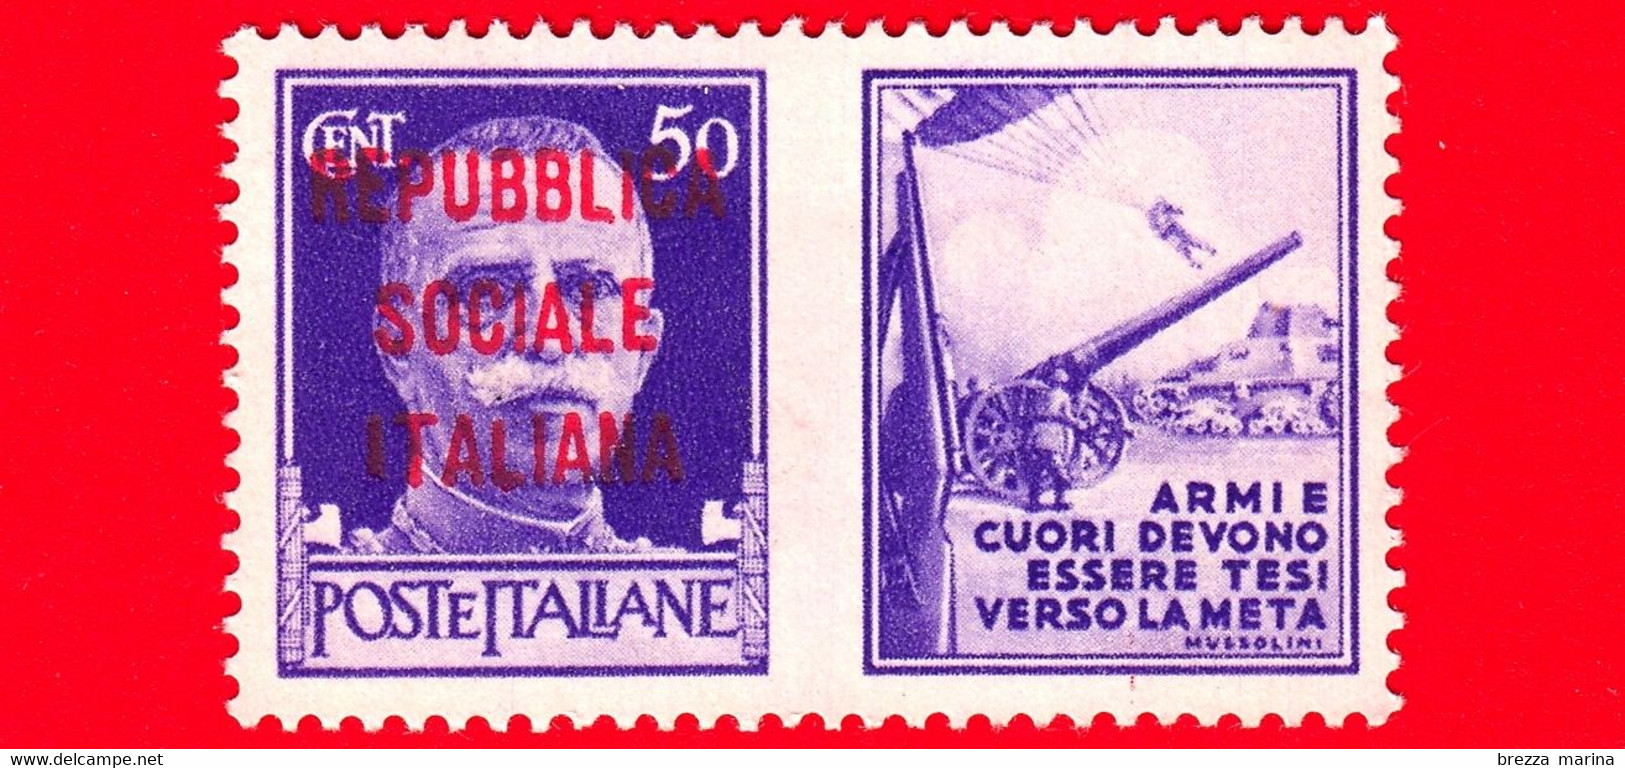 Nuovo - MNH - ITALIA - Rep. Sociale - 1944 - Imperiale - Propaganda Di Guerra - Armi E Cuori Devono Essere Tesi Ver - 50 - Propagande De Guerre